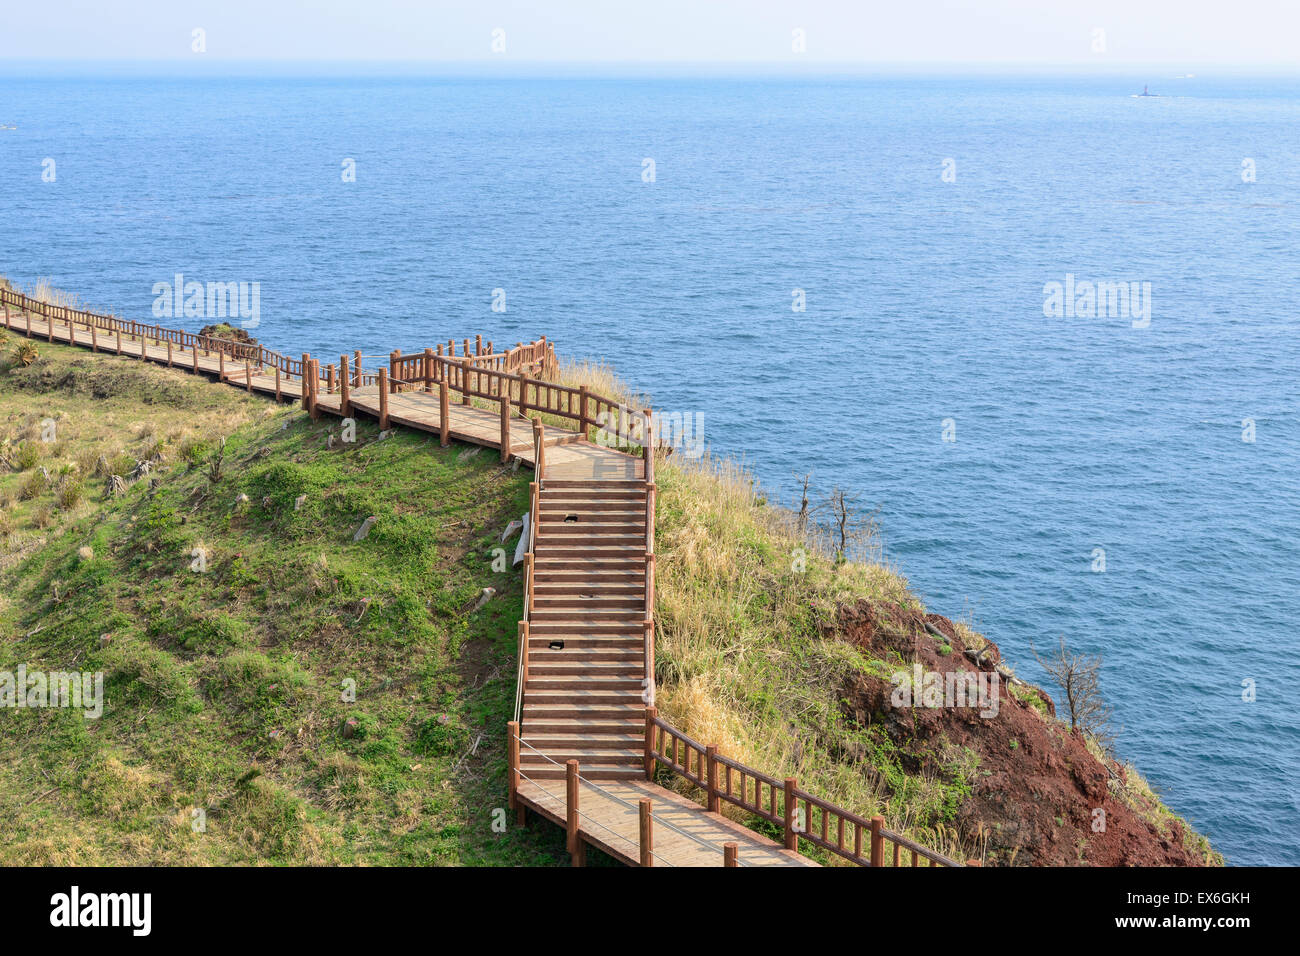 Vista de Olle sendero nº 10 Curso en Songaksan en la isla de Jeju, Corea. Olle es famoso trekking cursos creados a lo largo de la costa Foto de stock